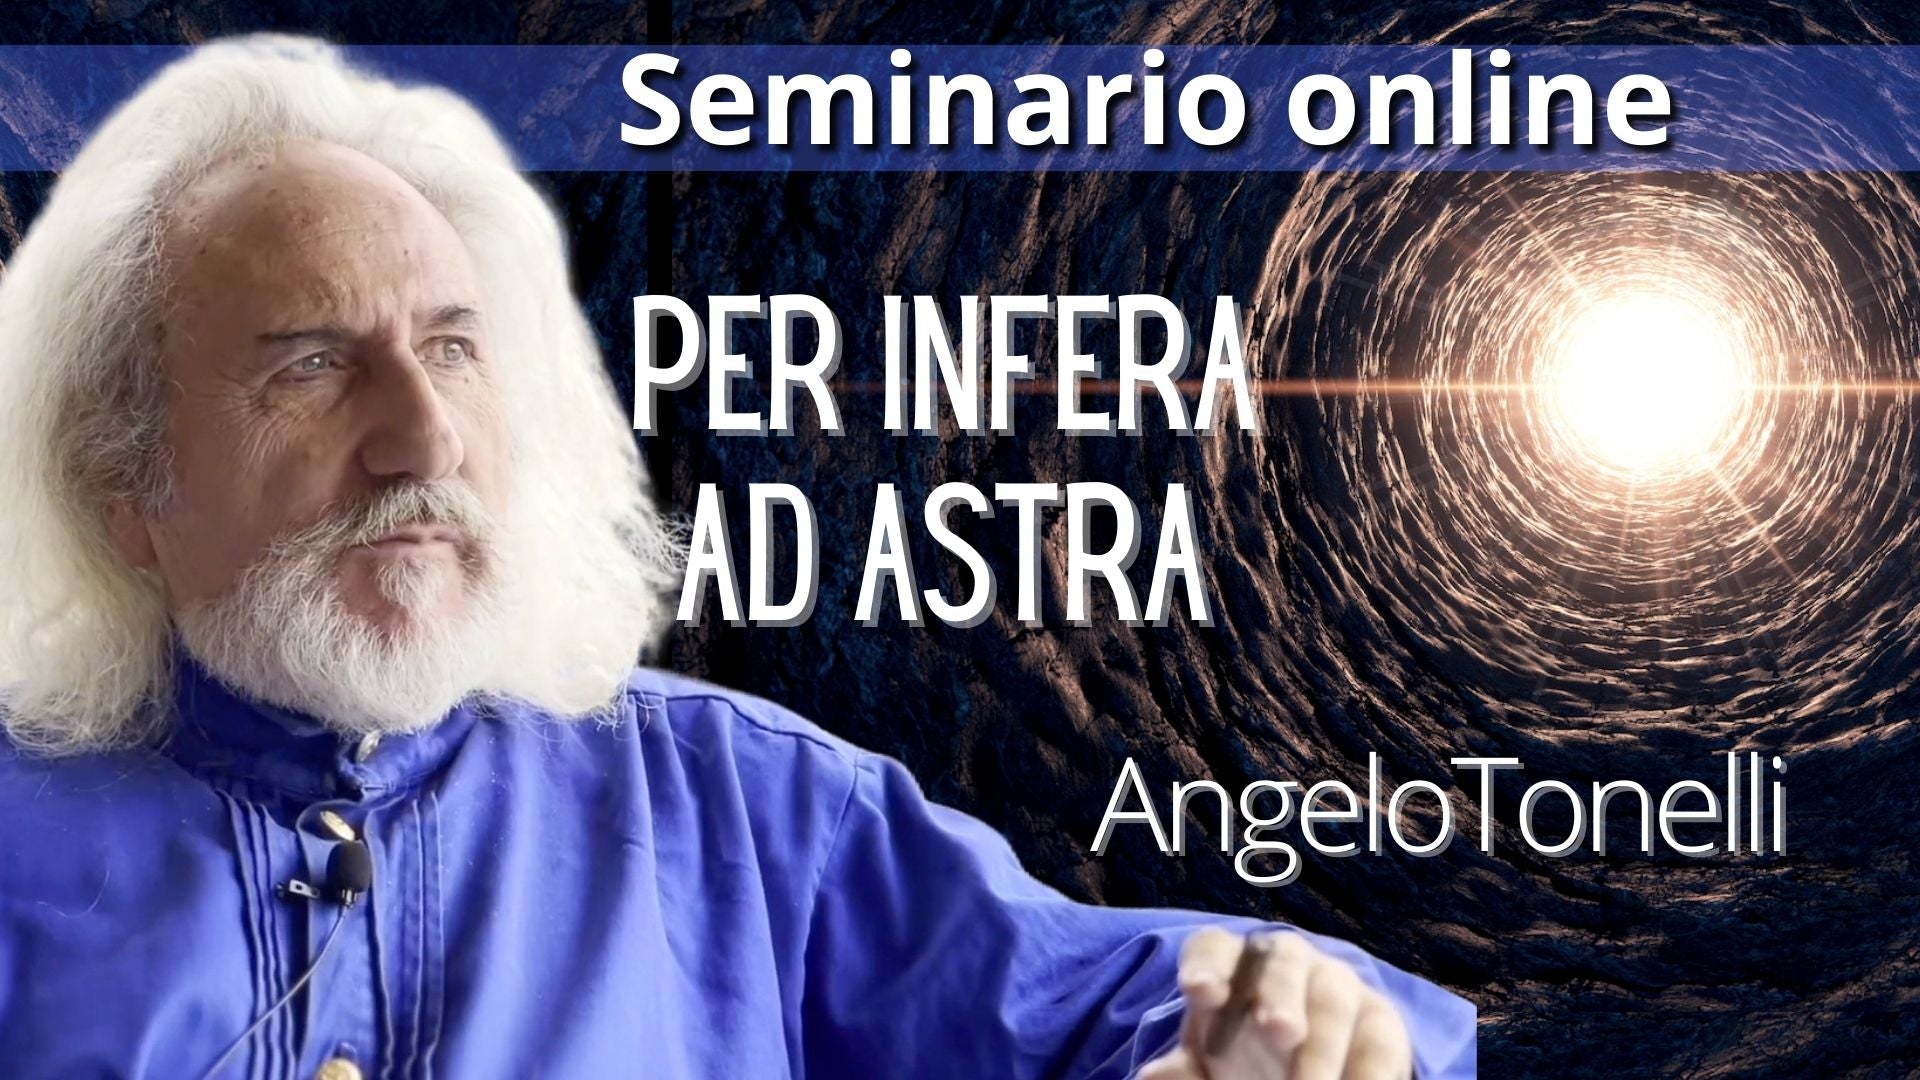 Video-seminario "Per Infera ad Astra" - Angelo Tonelli (scaricabile e visibile in streaming senza limite)